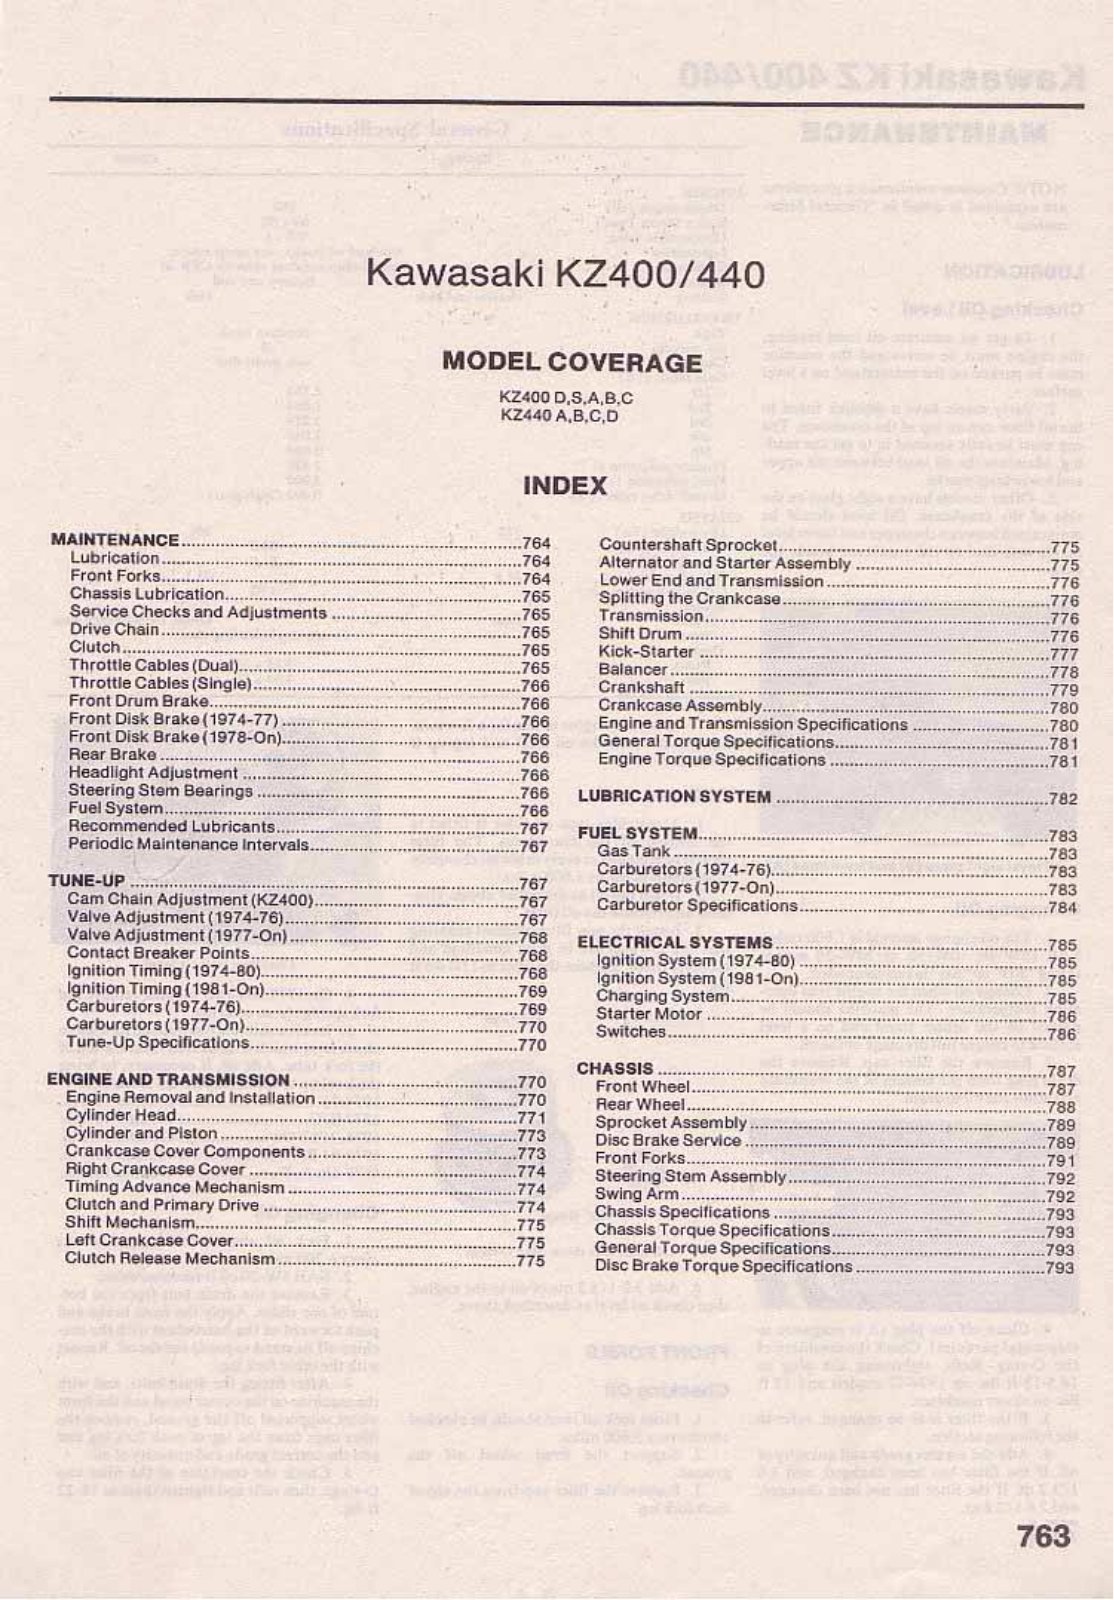 Kawasaki Kz400, Kz440 Service Manual